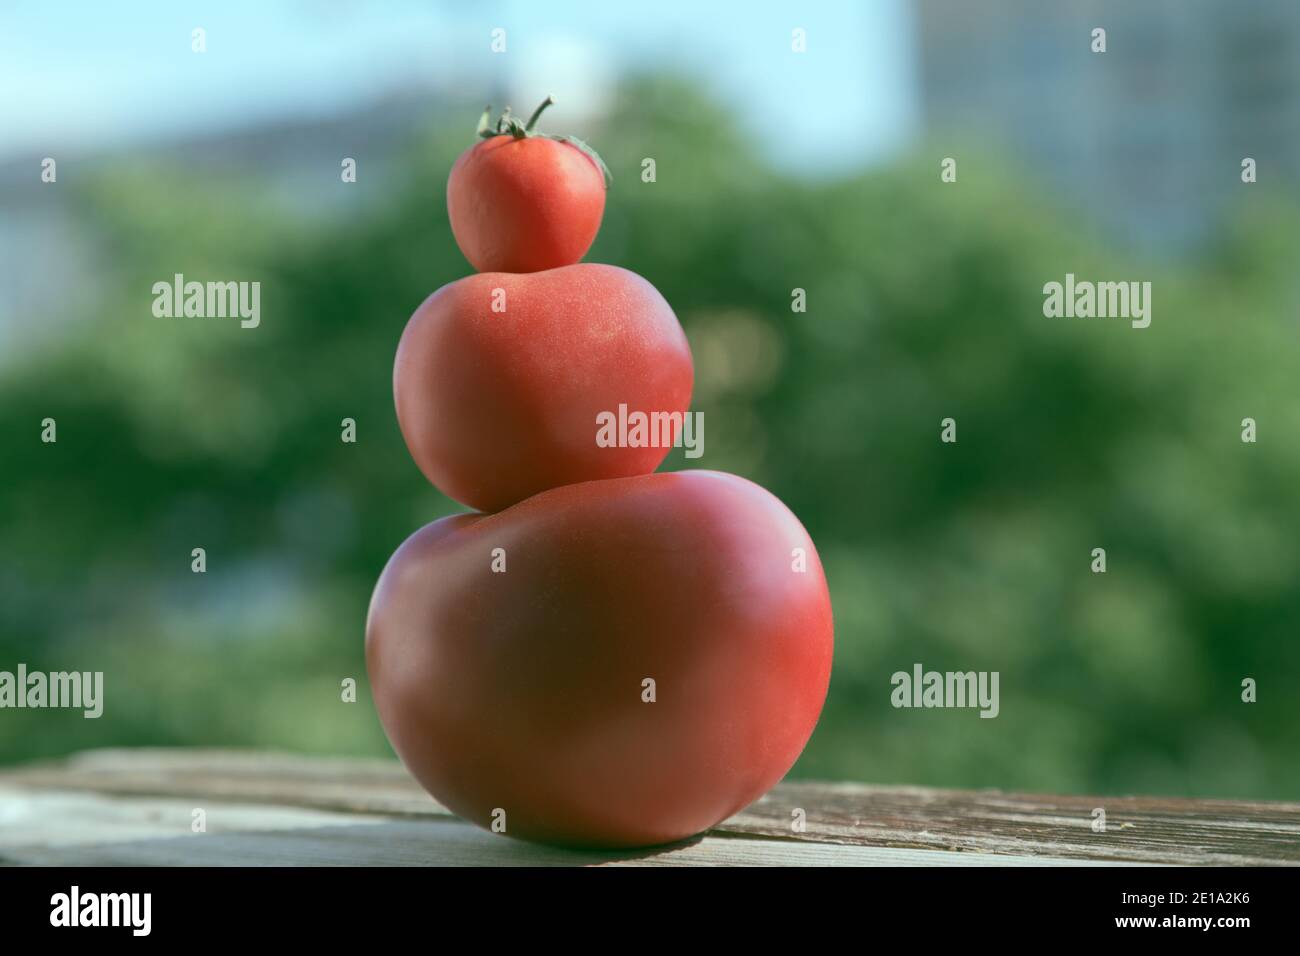 Trois tomates rouges empilées, de la plus grande à la plus petite. L'arrière-plan est flou. Gros plan. Photo prise à la lumière du jour. Banque D'Images